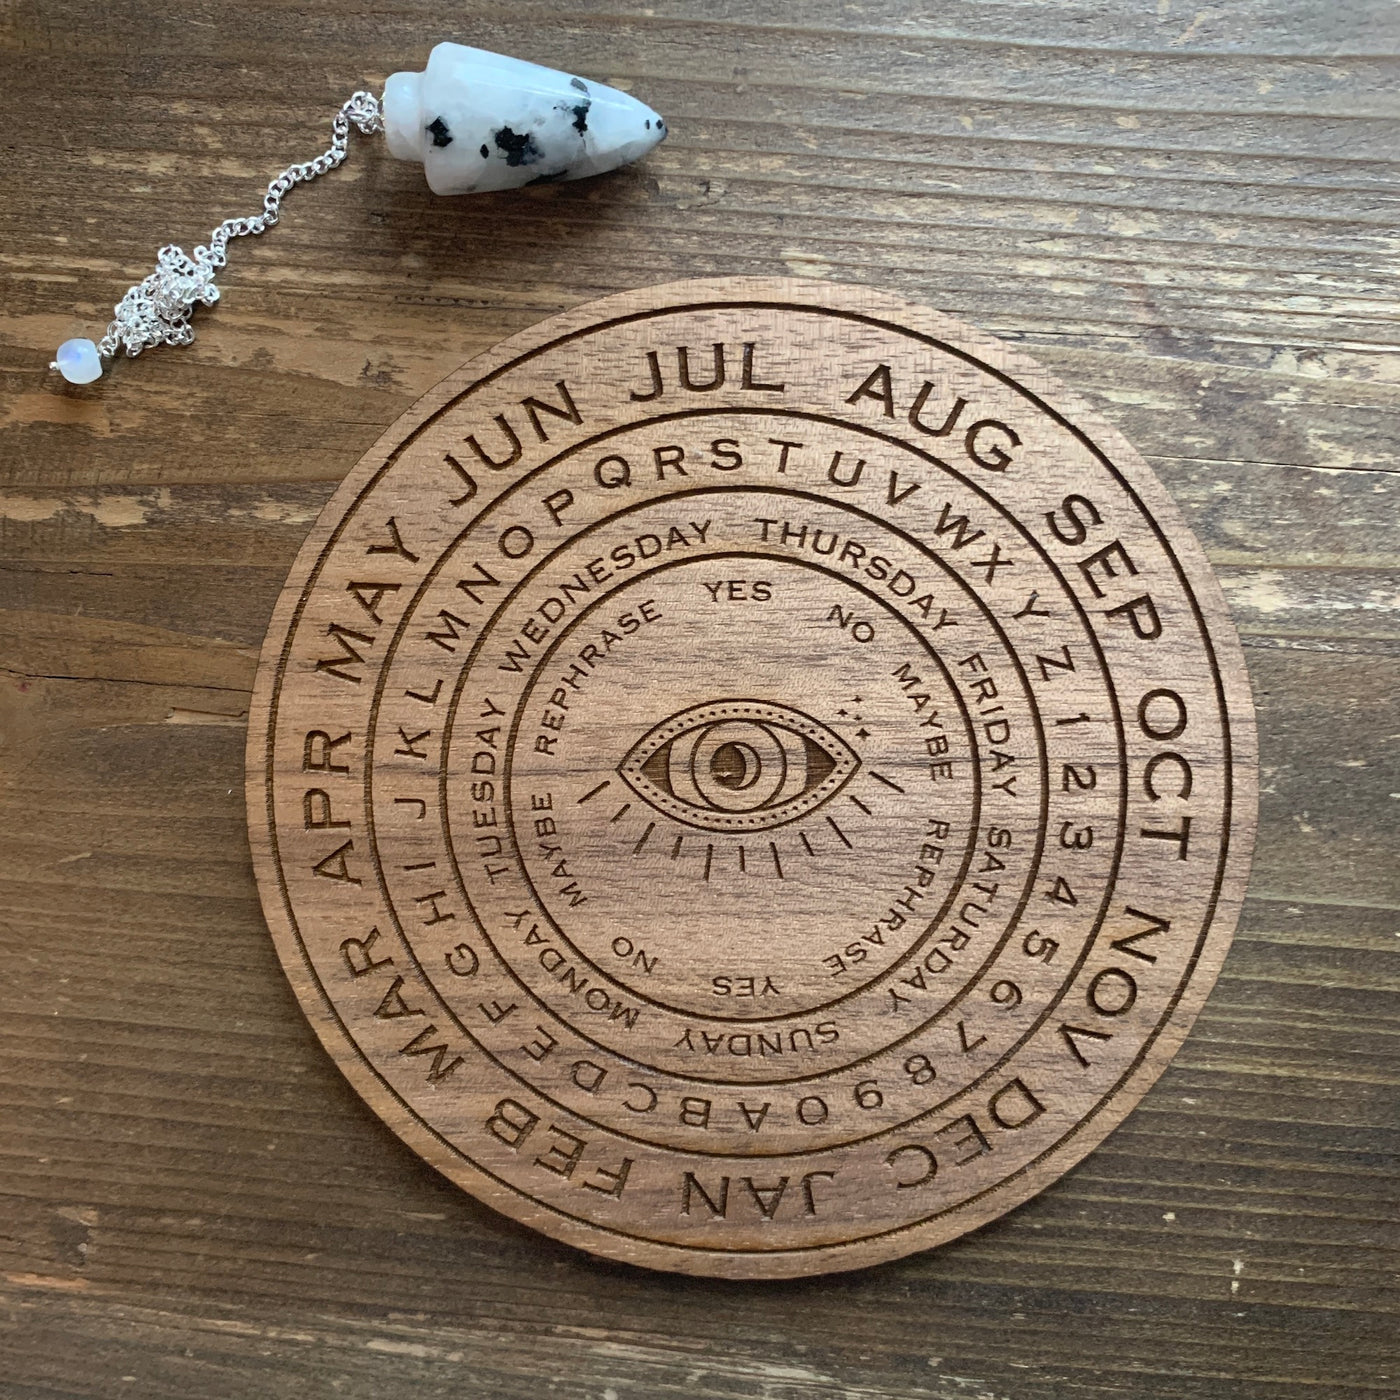 All-seeing Eye Pendulum Board with pendulum